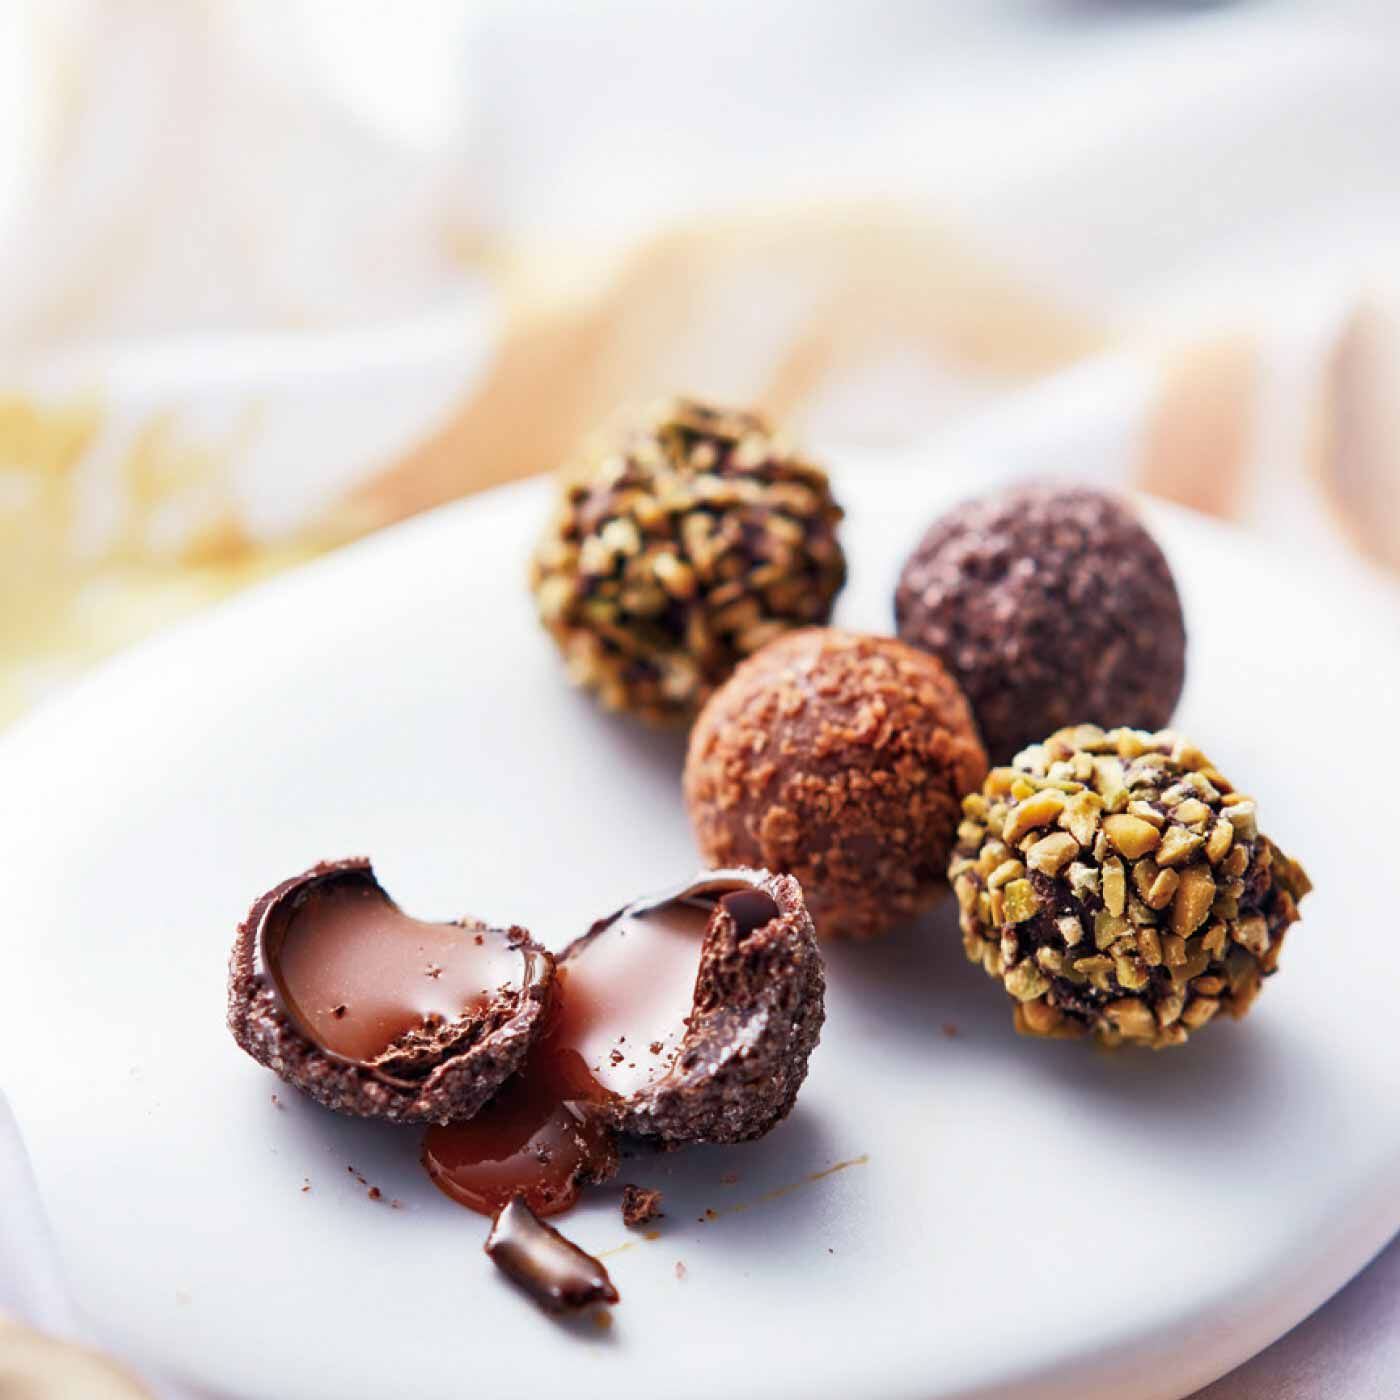 Couturier|「幸福（しあわせ）のチョコレート」とコラボ 樹脂粘土で作る 食べられないチョコレートの会|「幸福（しあわせ）のチョコレート」の大人気チョコレート。パリの老舗チョコレート店「ROY（ロワ）」とコラボして作りました。